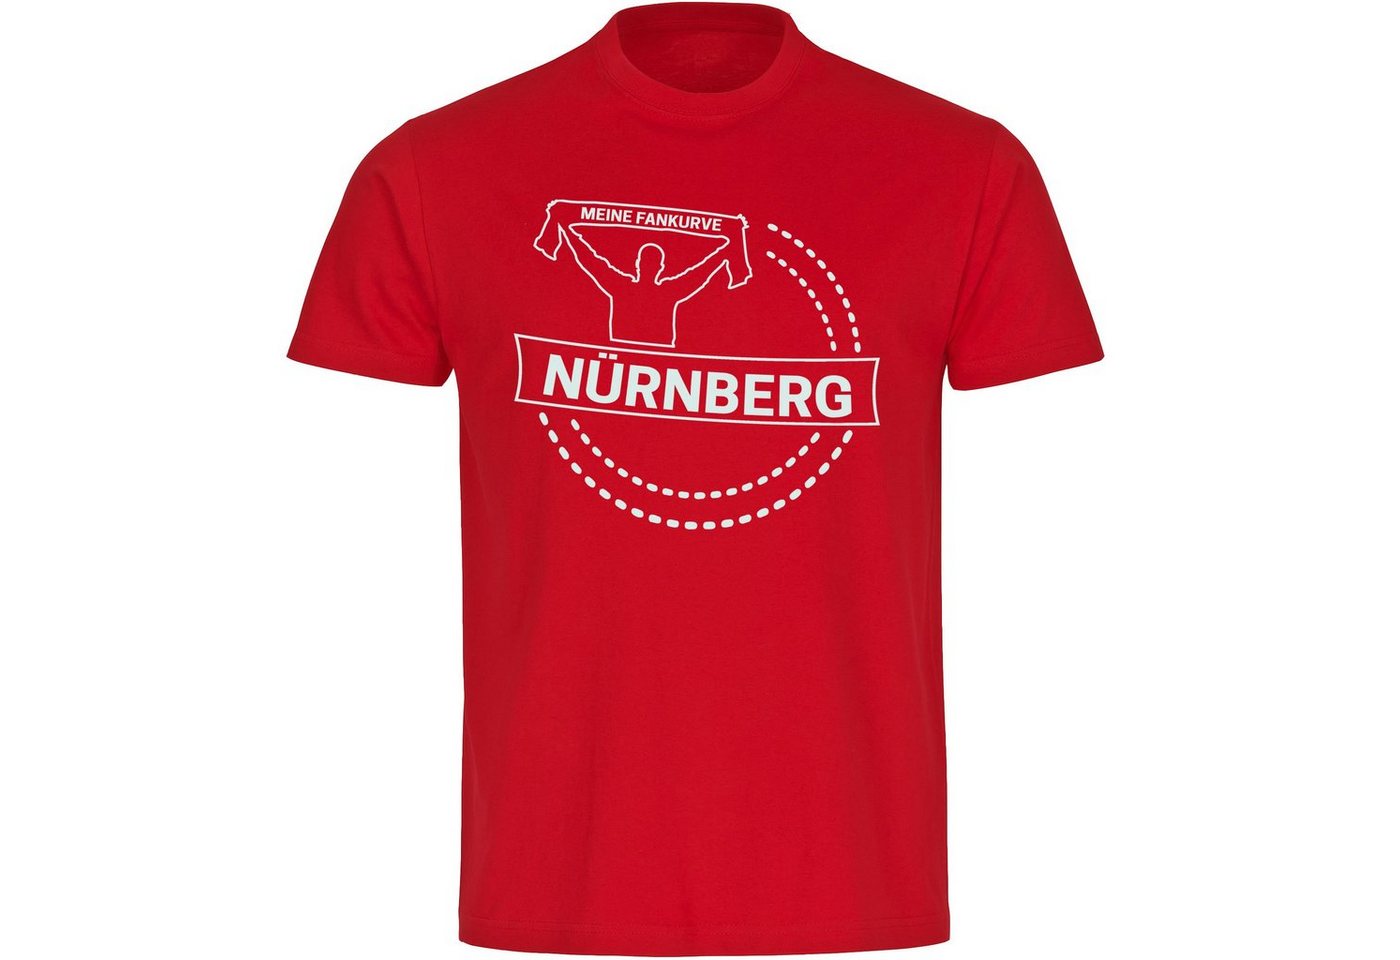 multifanshop T-Shirt Herren Nürnberg - Meine Fankurve - Männer von multifanshop